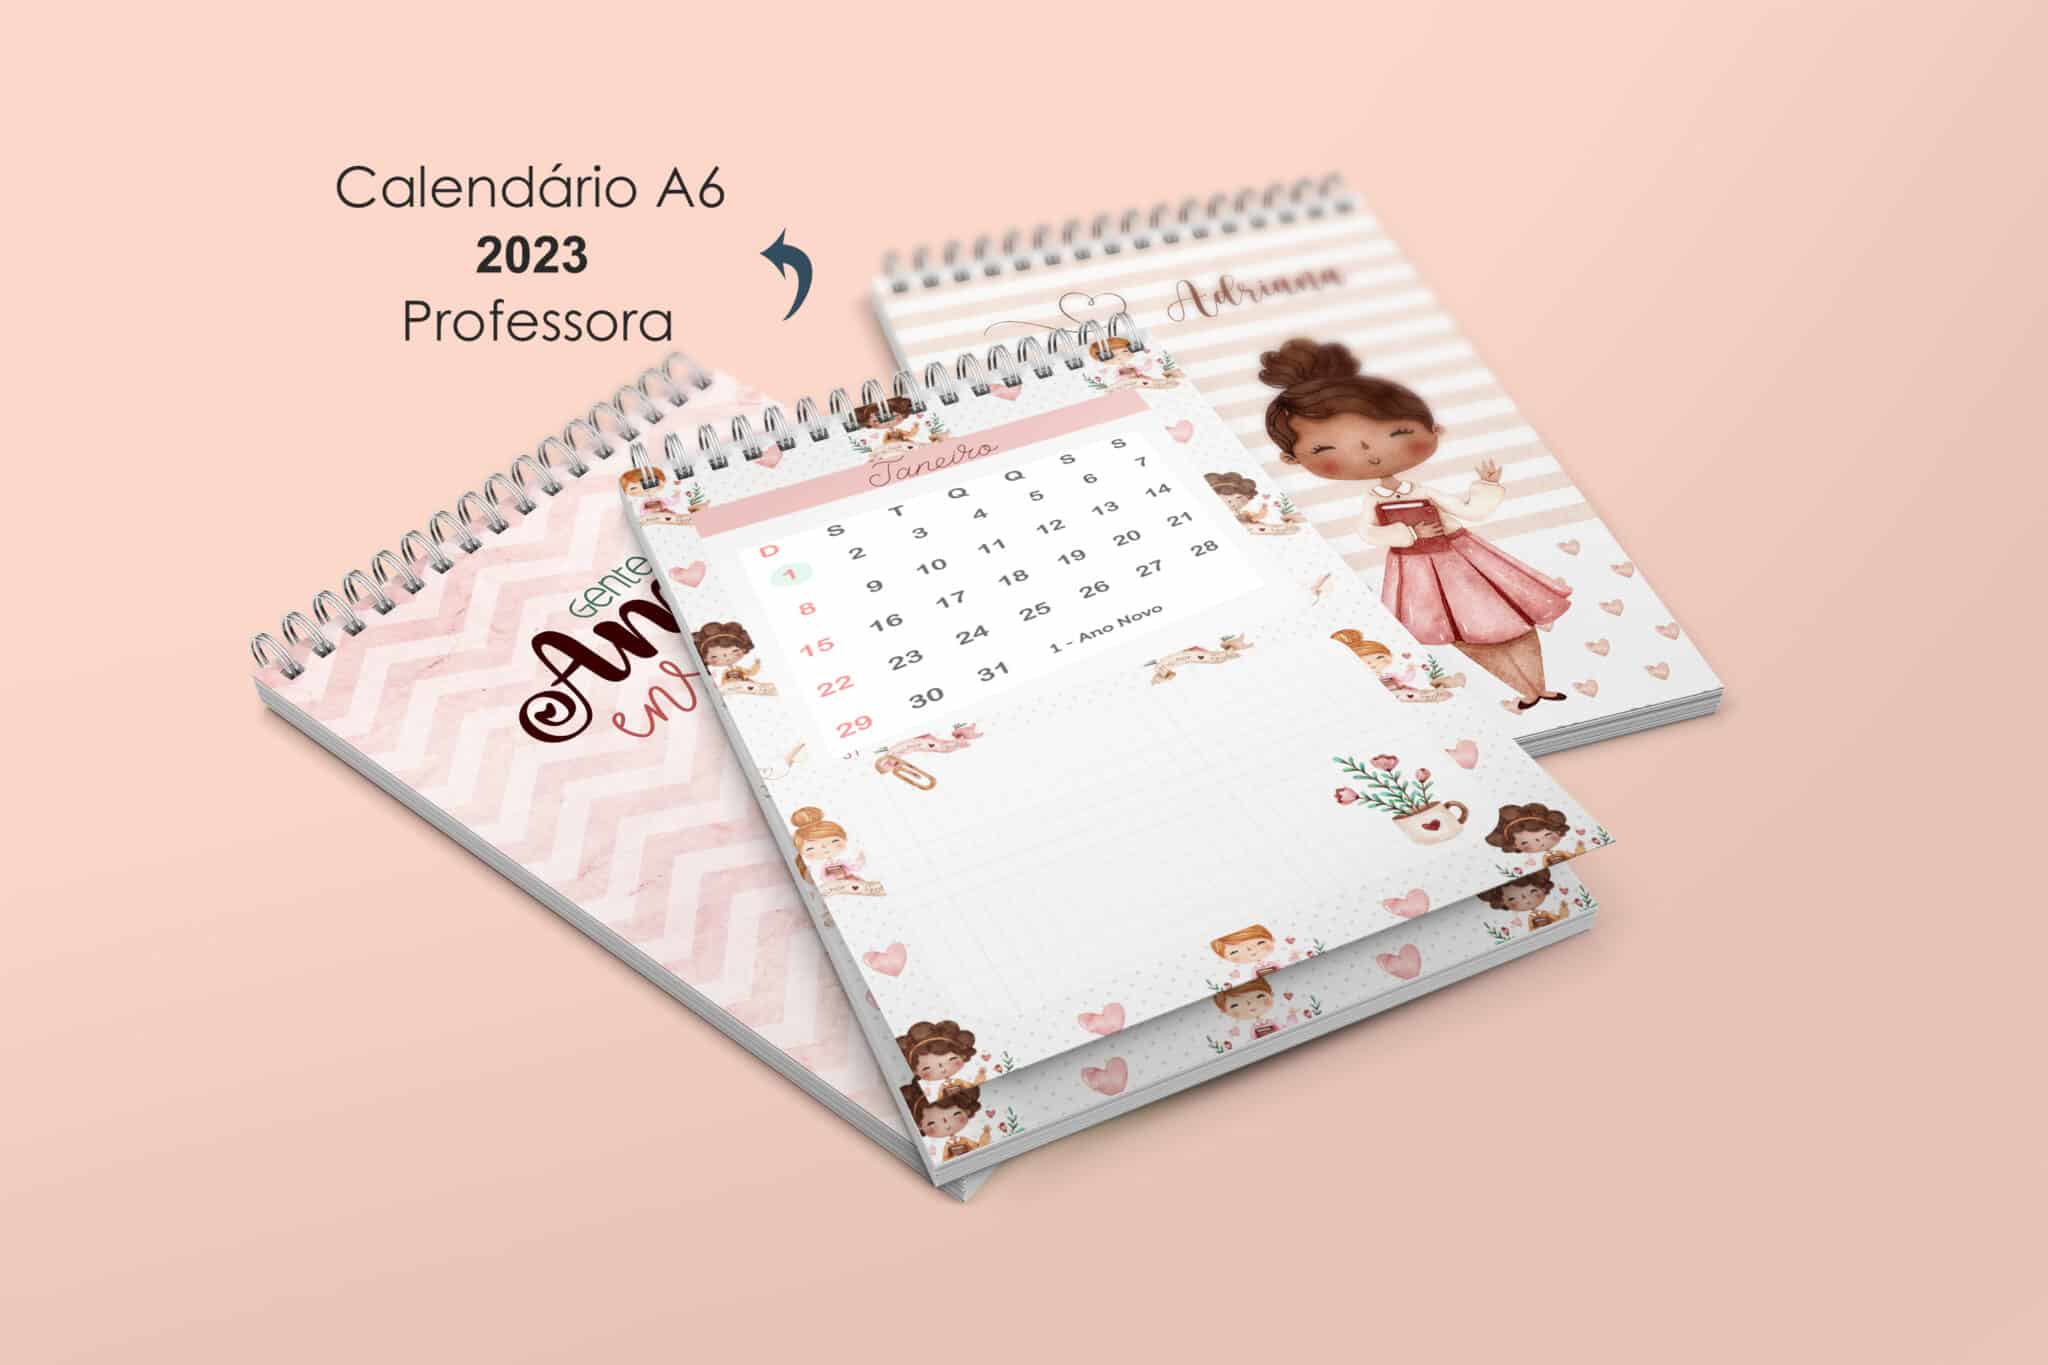 pacote_combo_caderno_bloquinho_agenda_dia_dos_professores_miolo_digital_arquivo_calendario_a5_a6_mini_planner_semanal_mesa_professor_pacote_kit_capas.